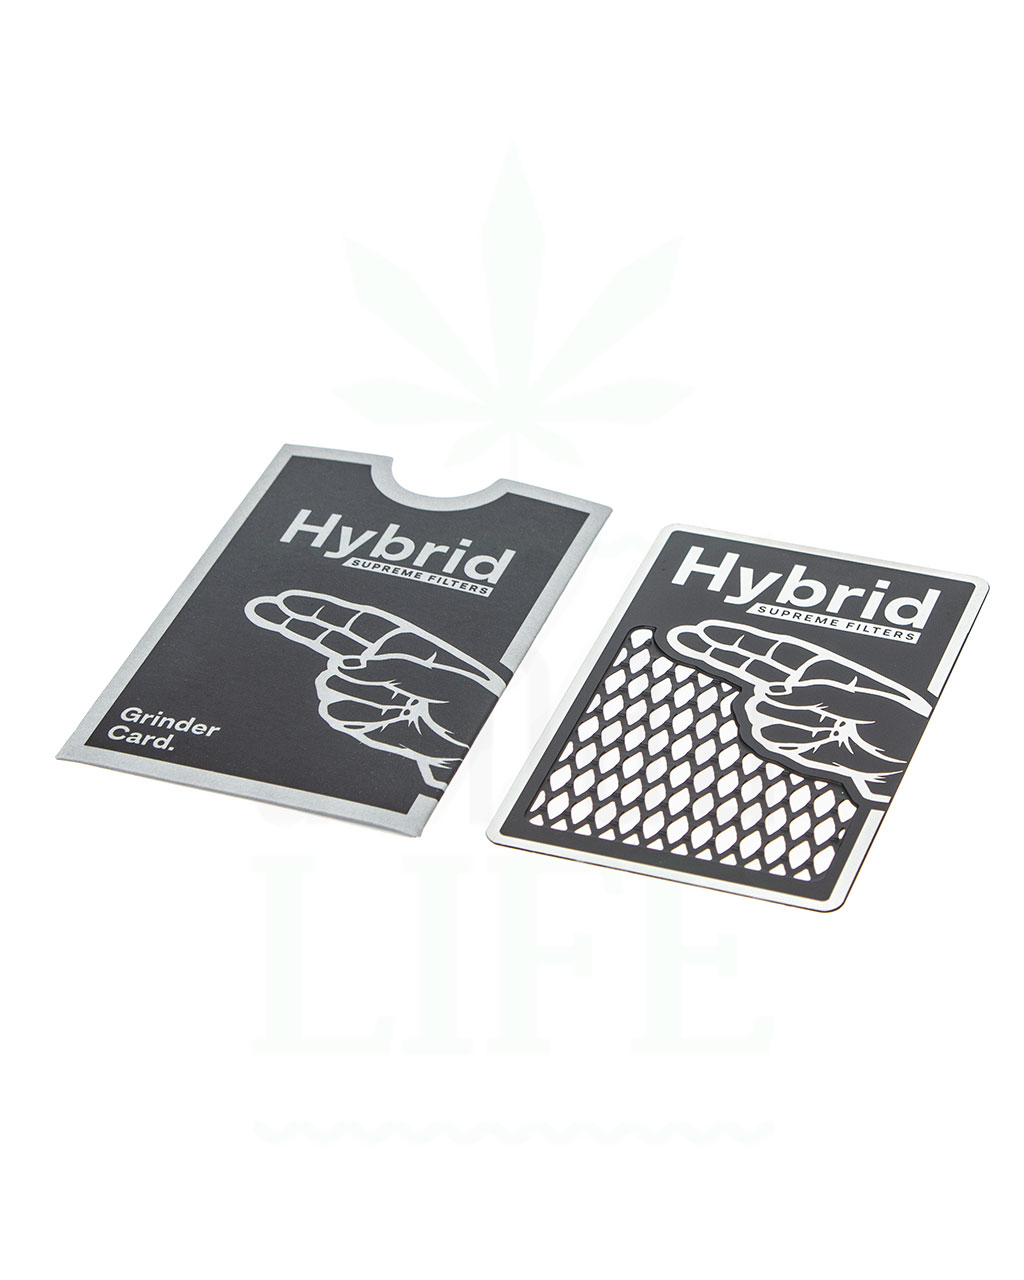 Grinder Hybrid Grinder Card  | Kreditkarten Format